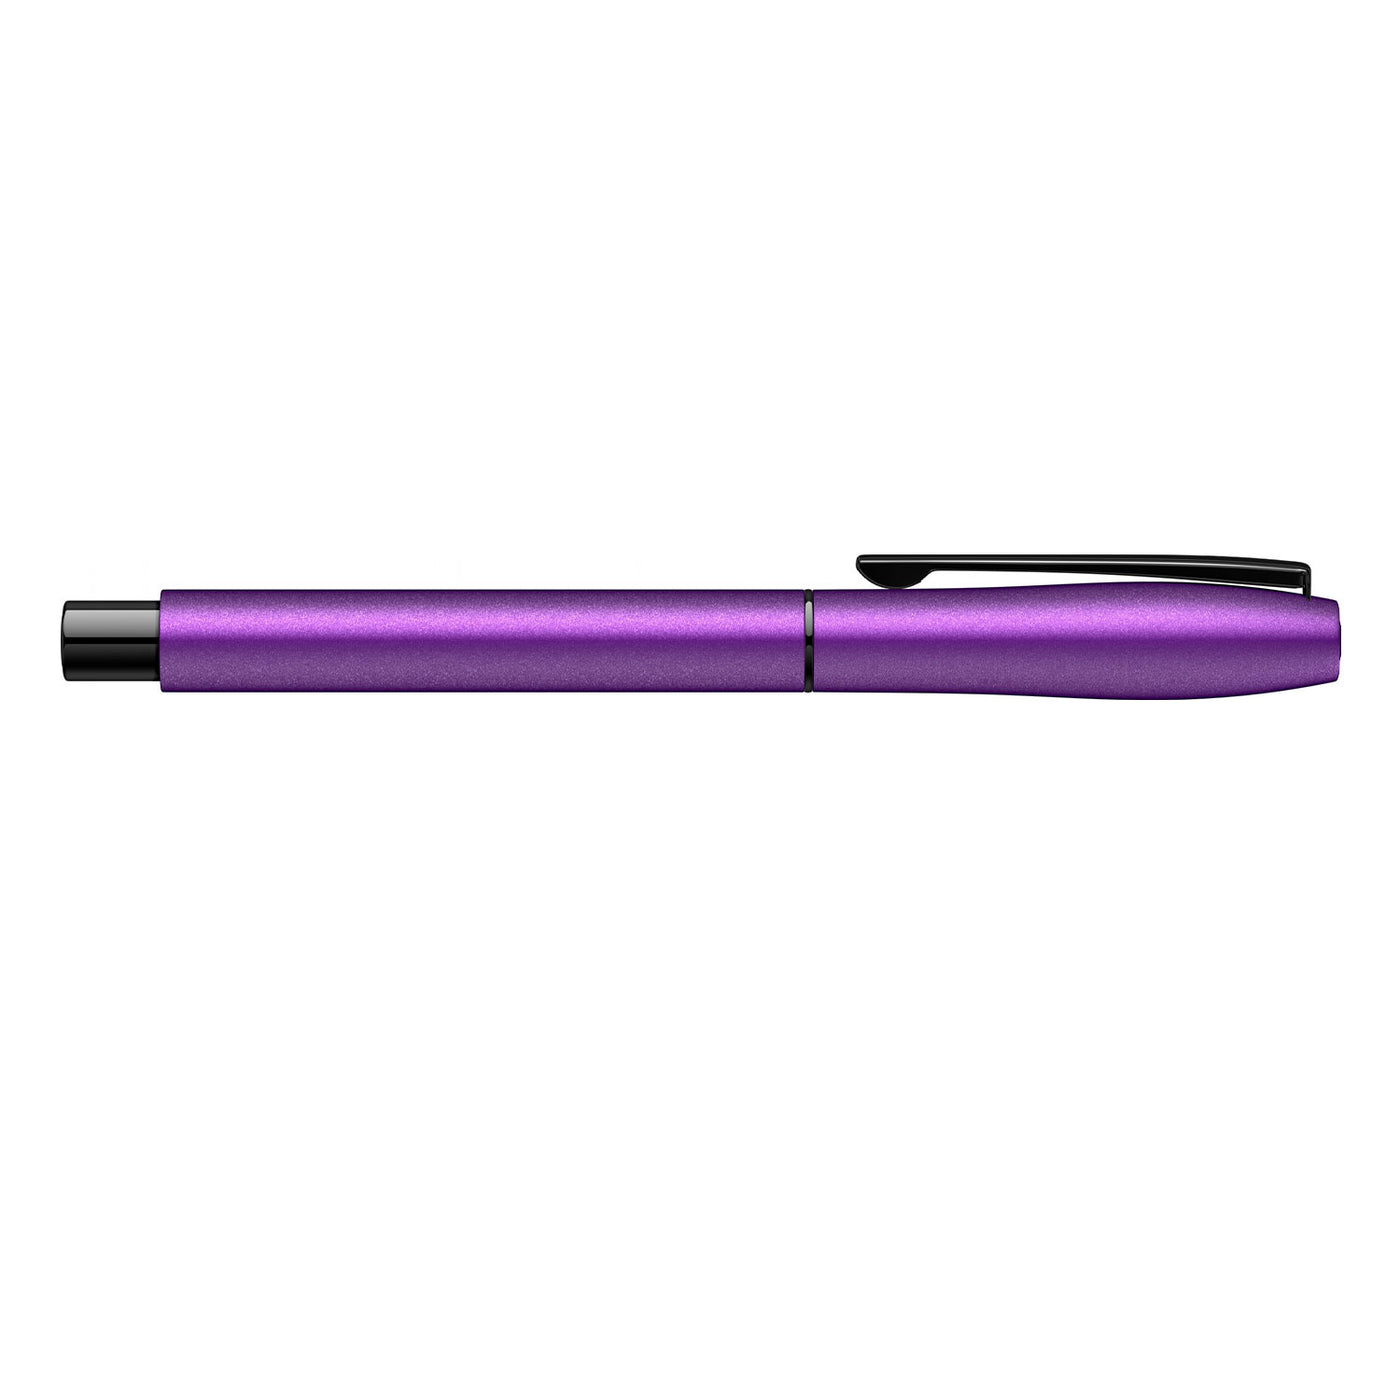 Scrikss Carnaval Roller Ball Pen - Satin Purple BT 5